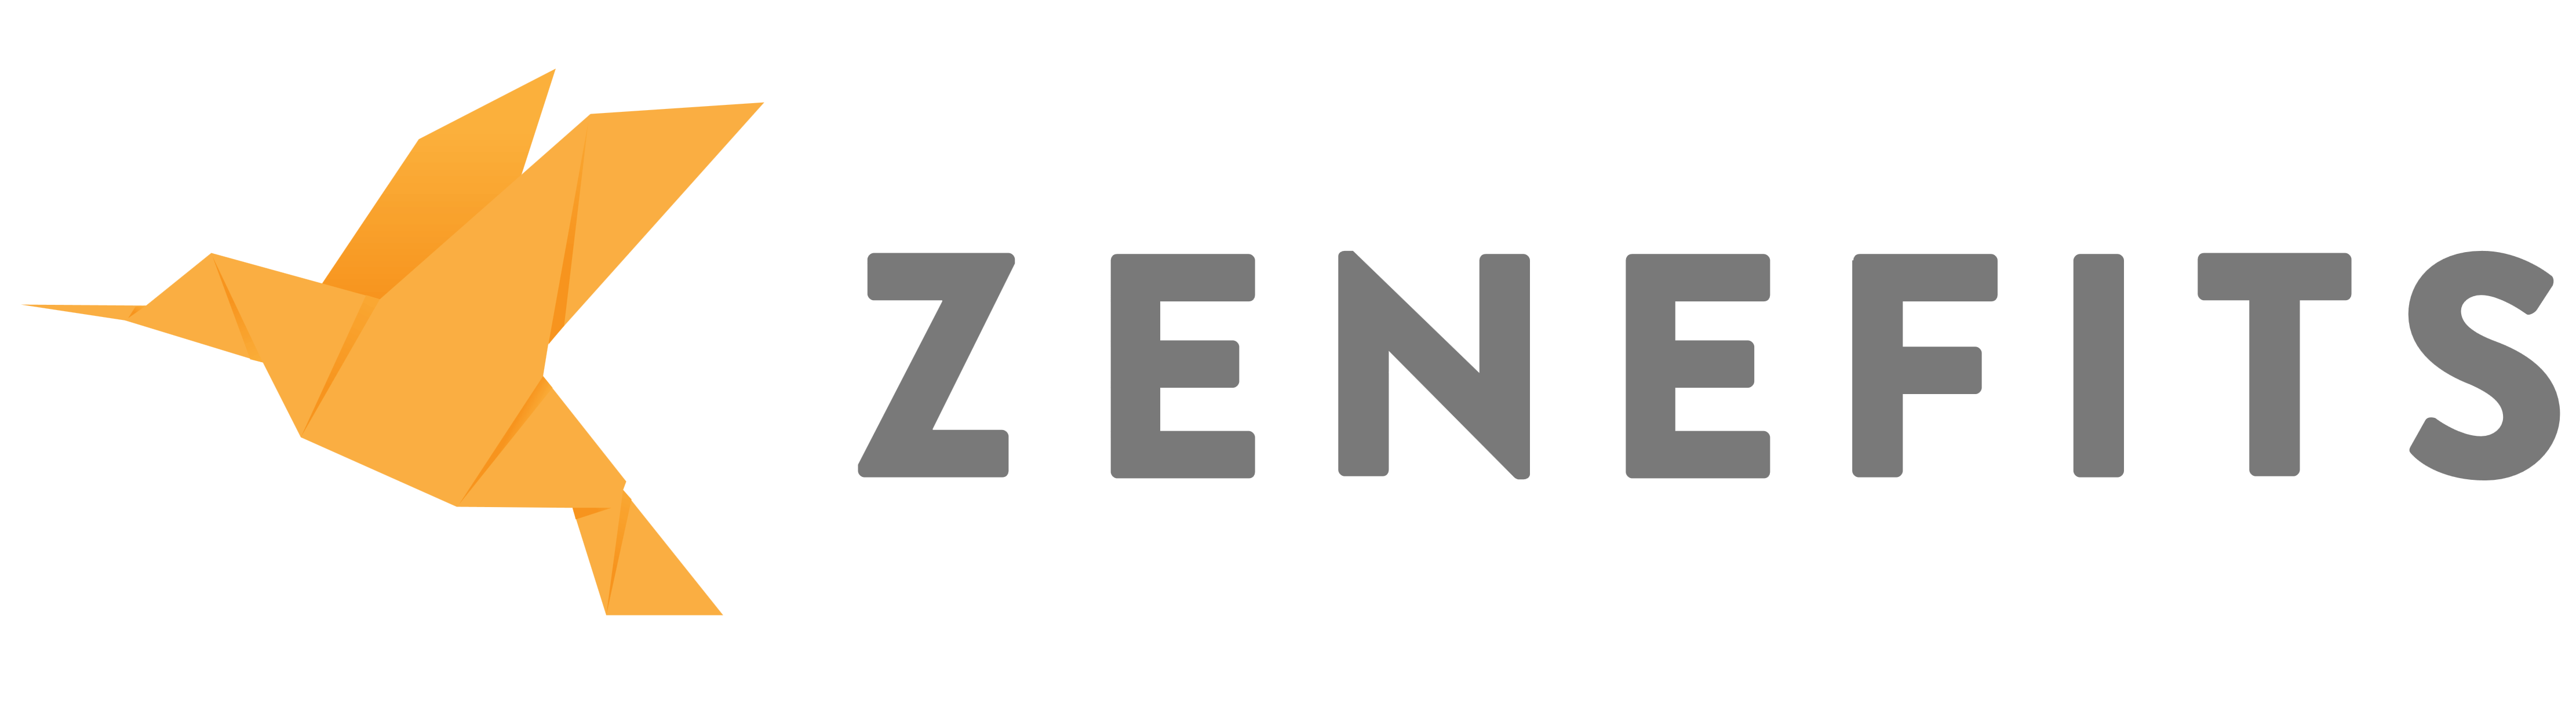 Zenefits logo, logotype